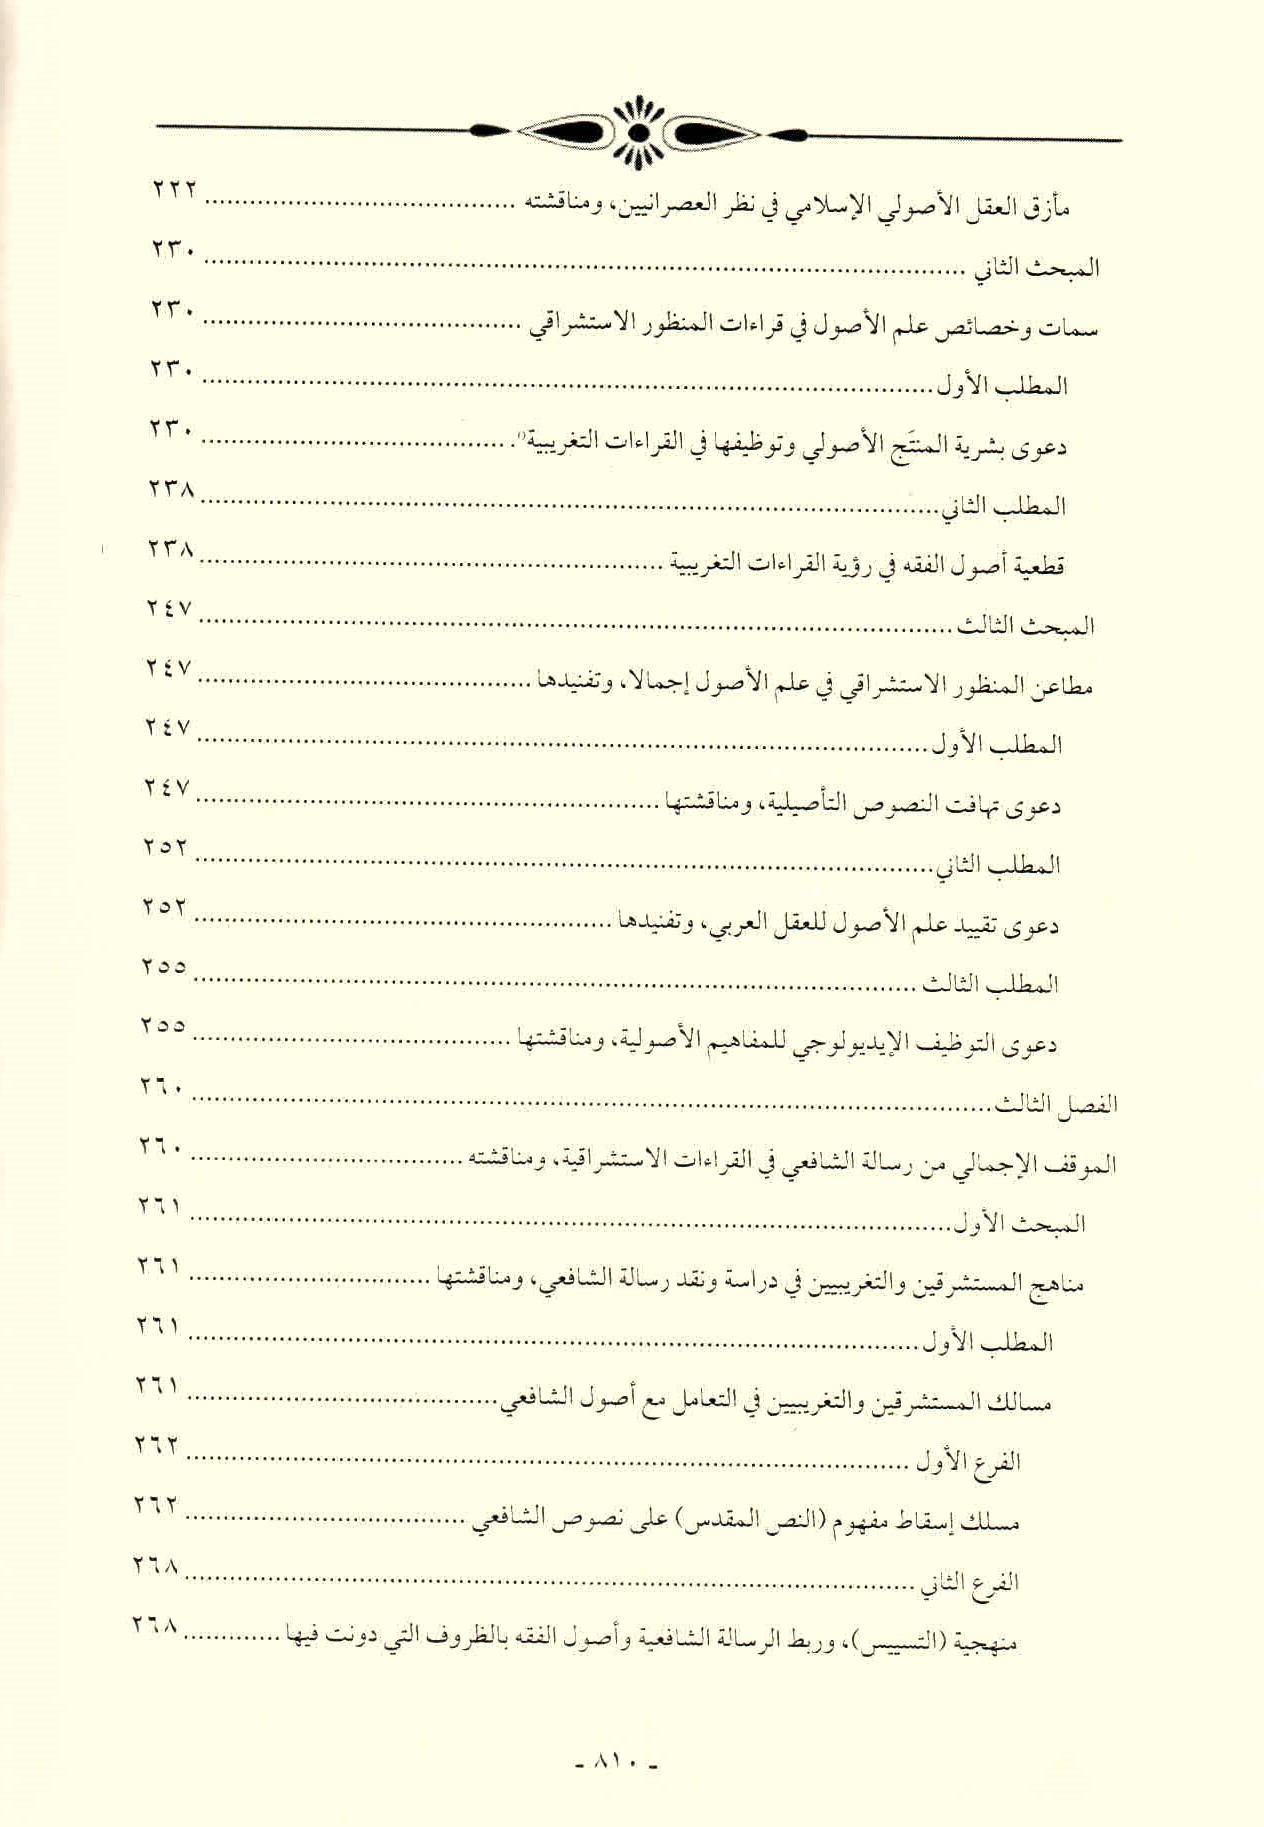 قائمة محتويات كتاب افتراءات المستشرقين والحداثيين على أصول الشريعة وأئمتها للدكتور هاني محمود ص. 810